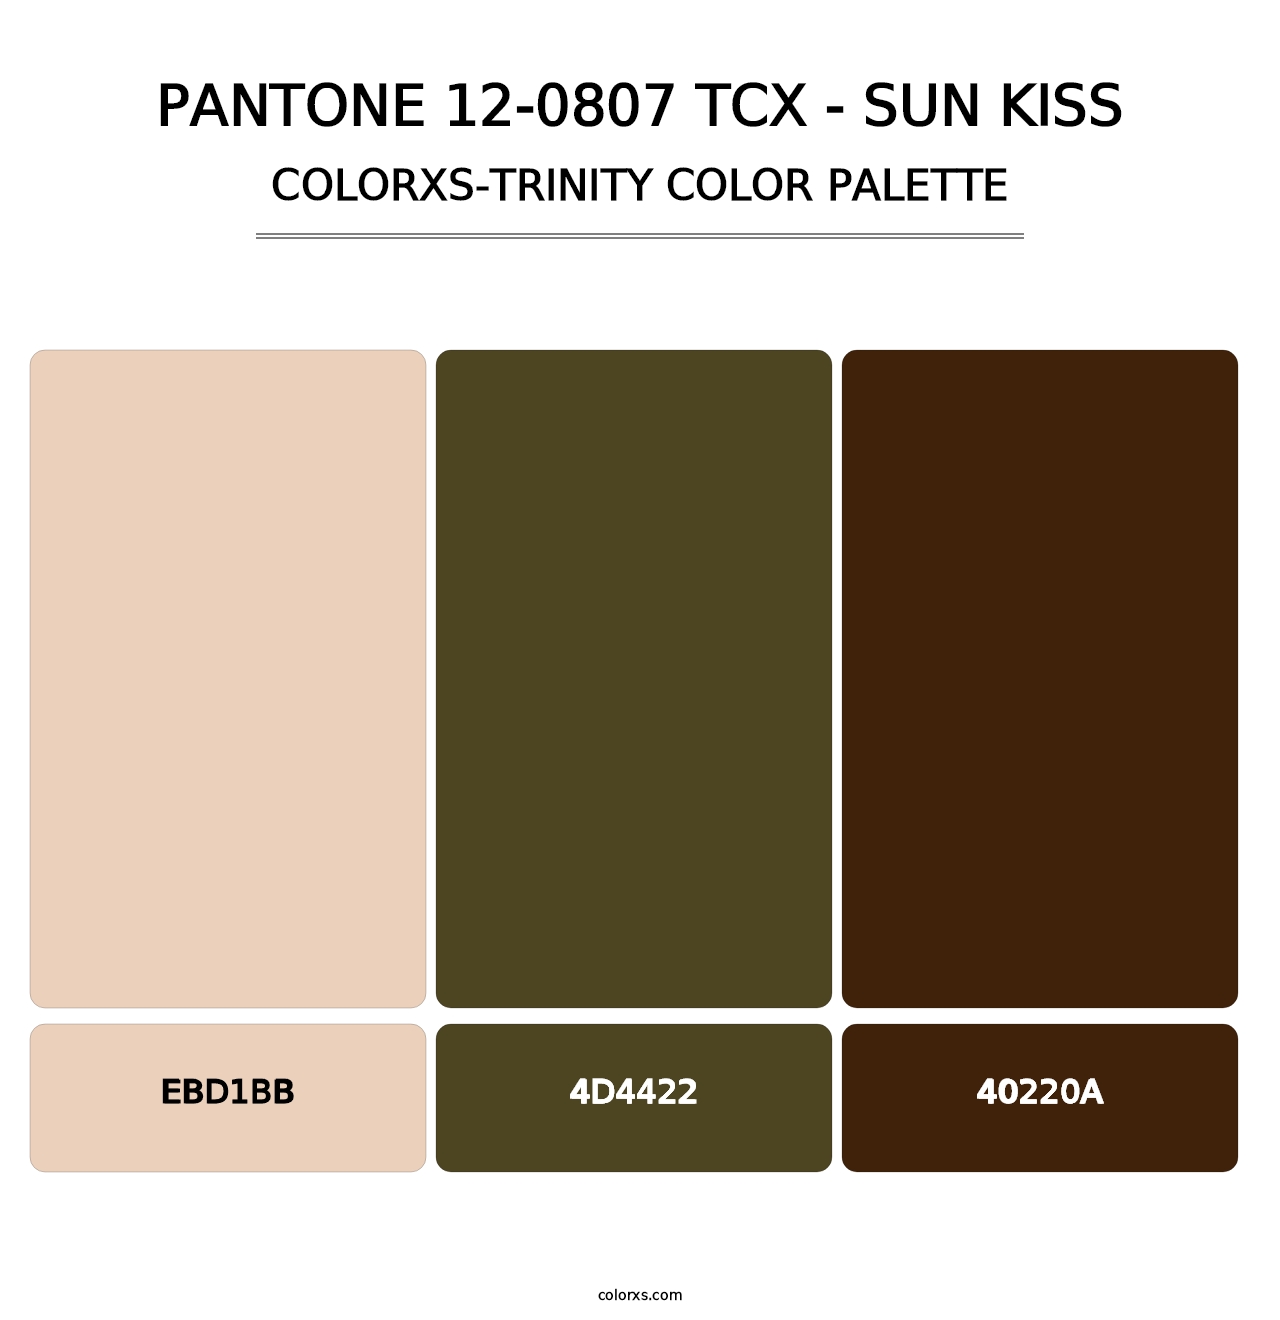 PANTONE 12-0807 TCX - Sun Kiss - Colorxs Trinity Palette